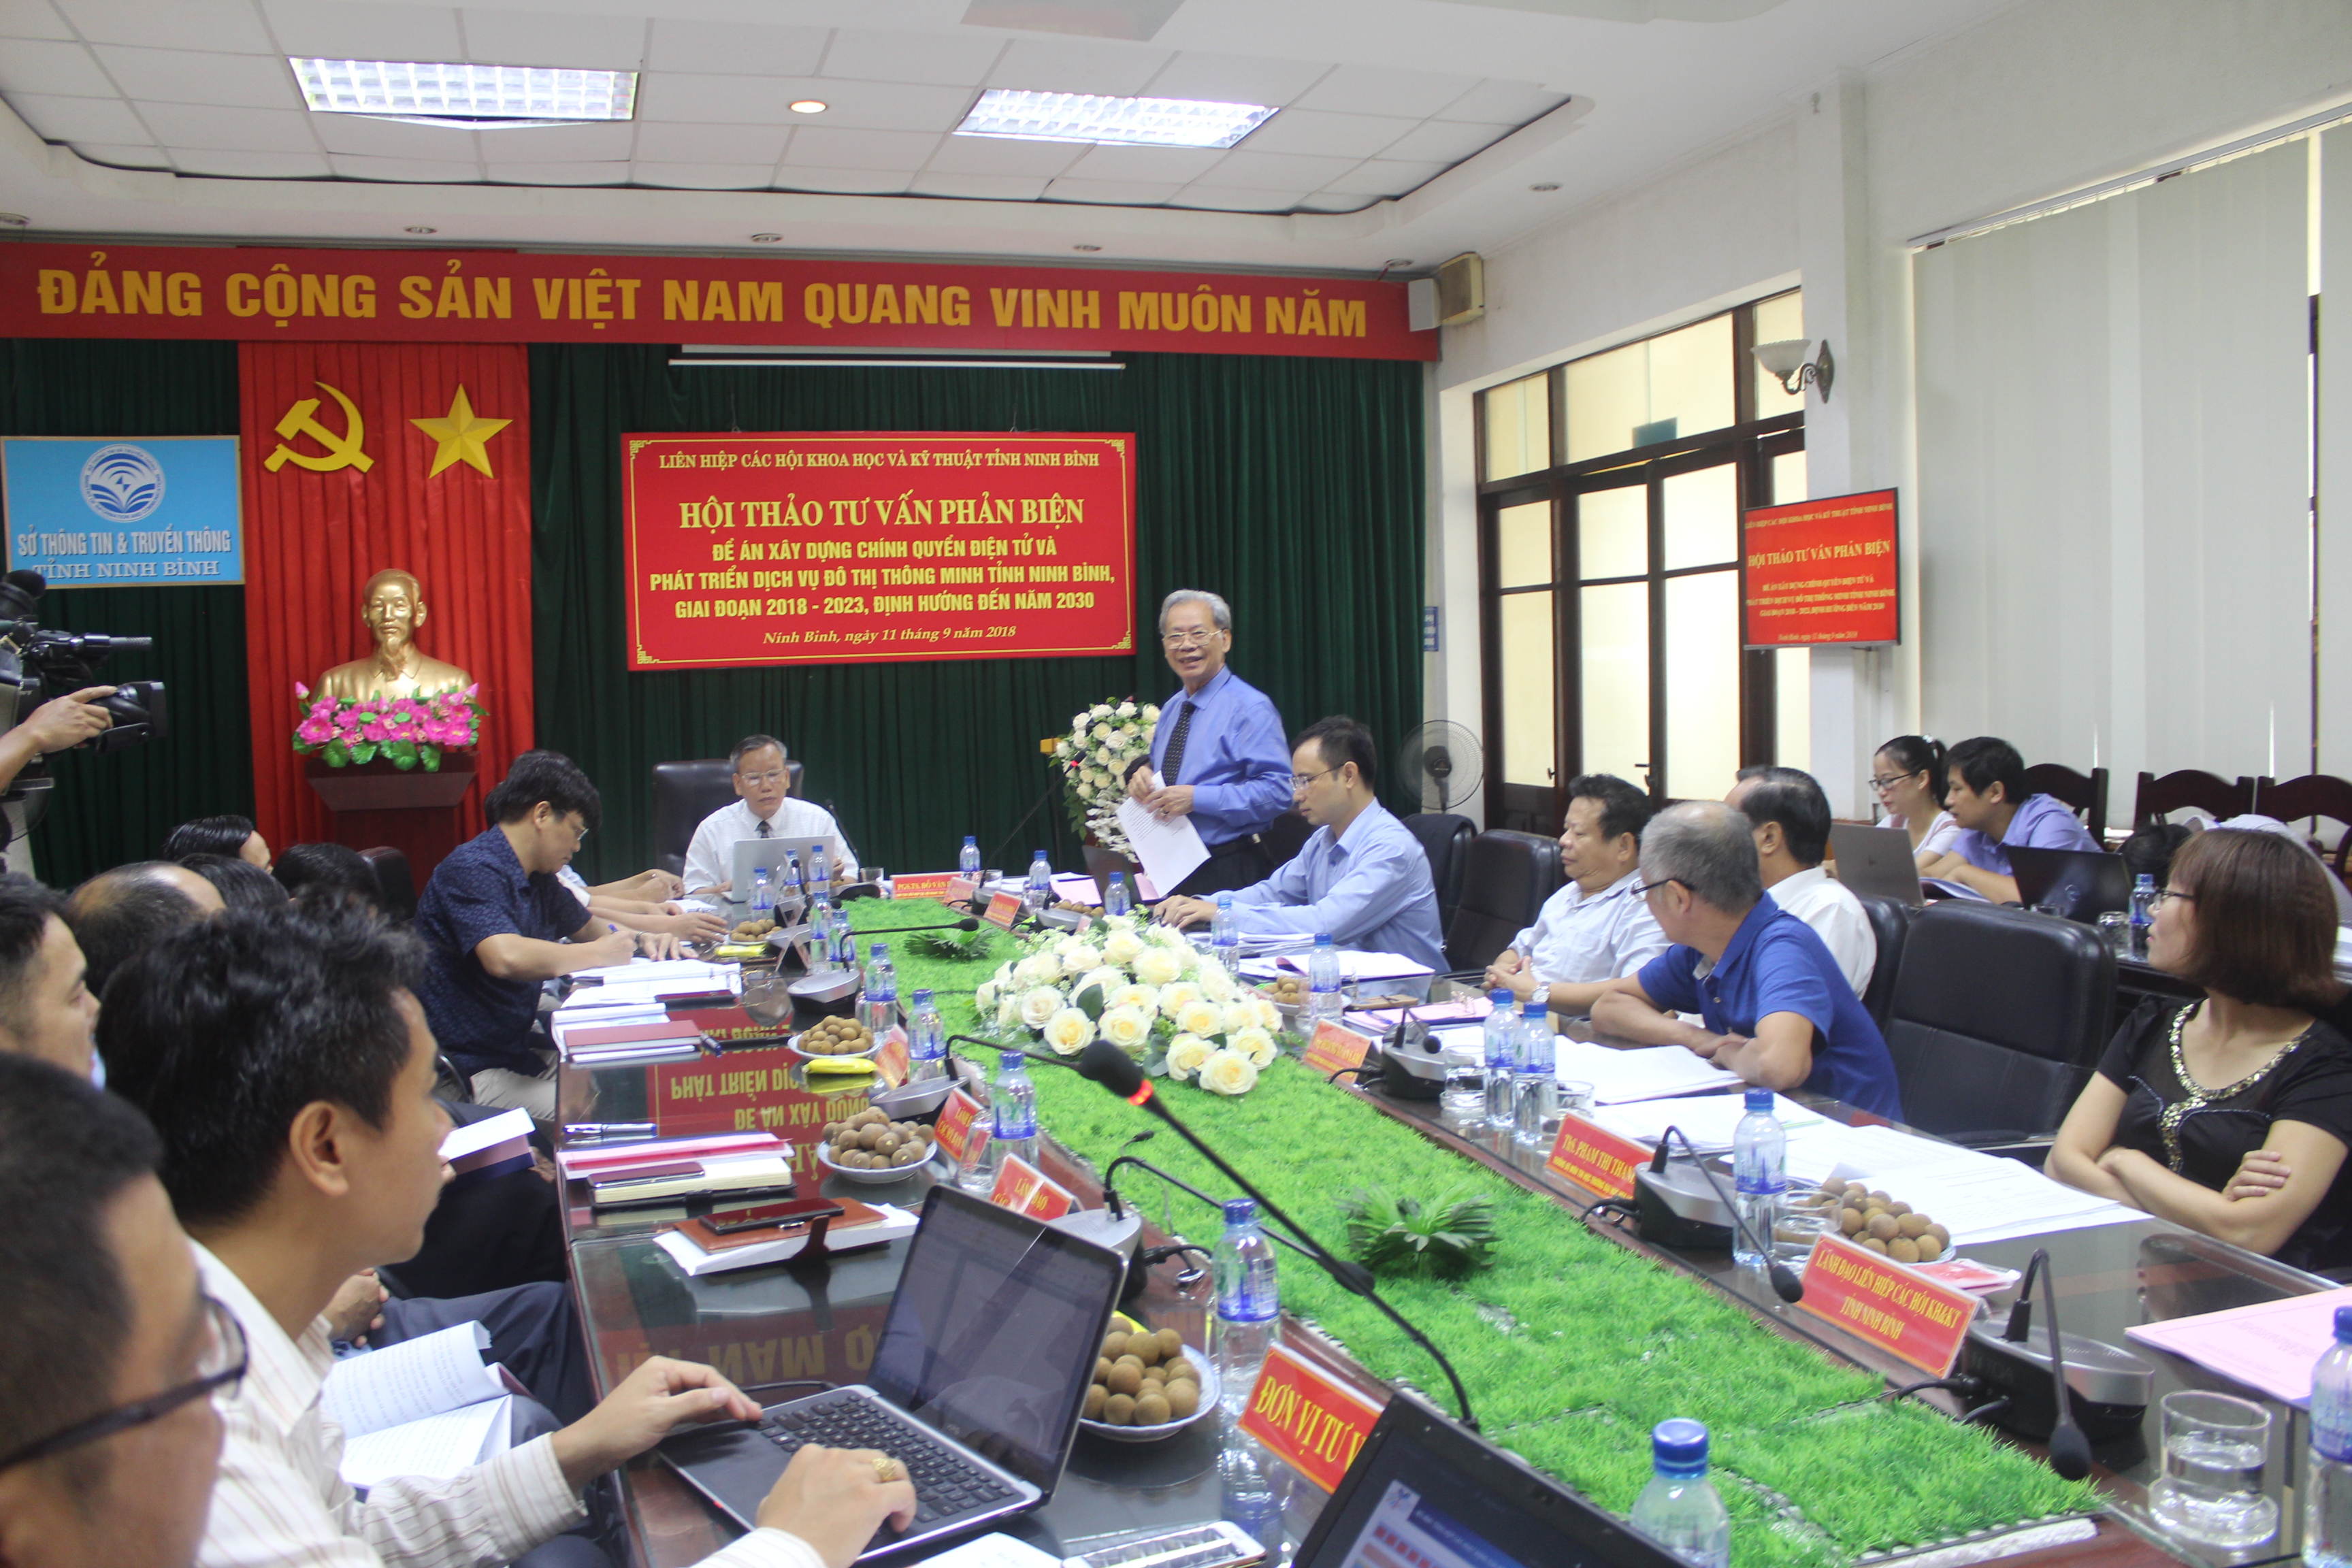 Hội thảo tư vấn, phản biện Đề án Xây dựng chính quyền điện tử và phát triển dịch vụ đô thị thông minh tỉnh Ninh Bình giai đoạn 2018 -2023, định hướng đến năm 2030